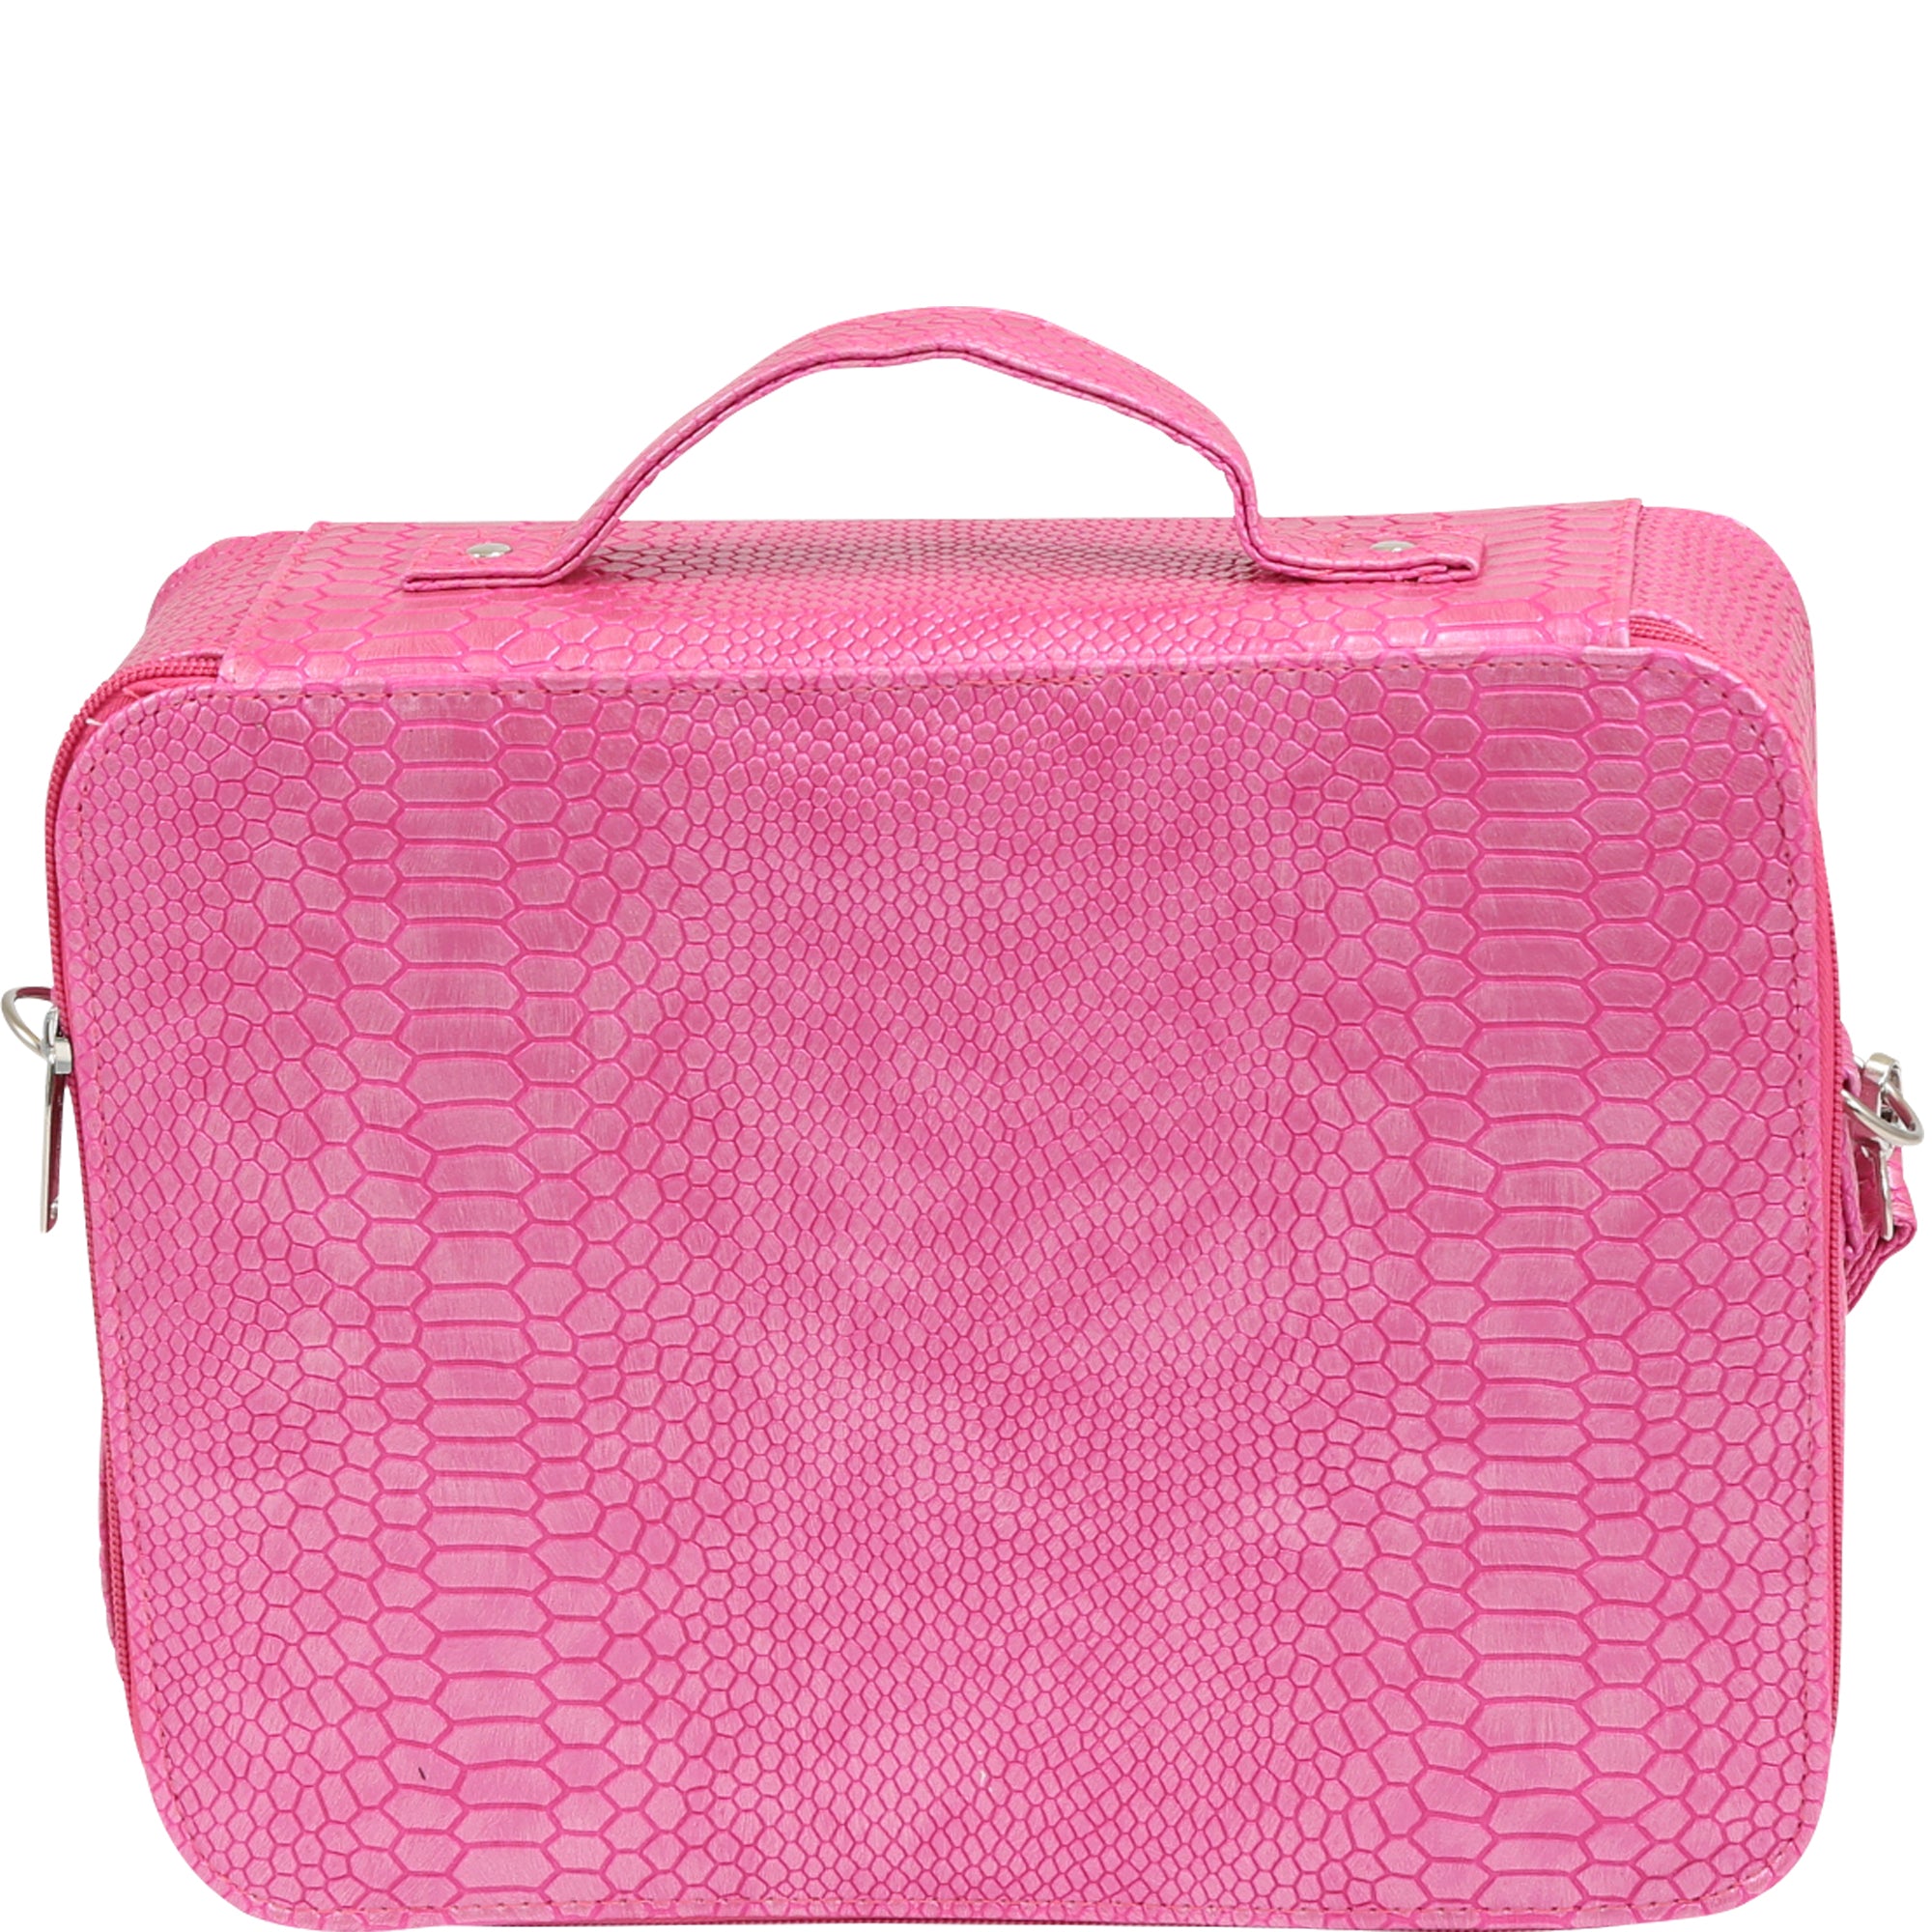 Cosmetic Travel Bag, Cosmetic Bag Cosmopolitan Design